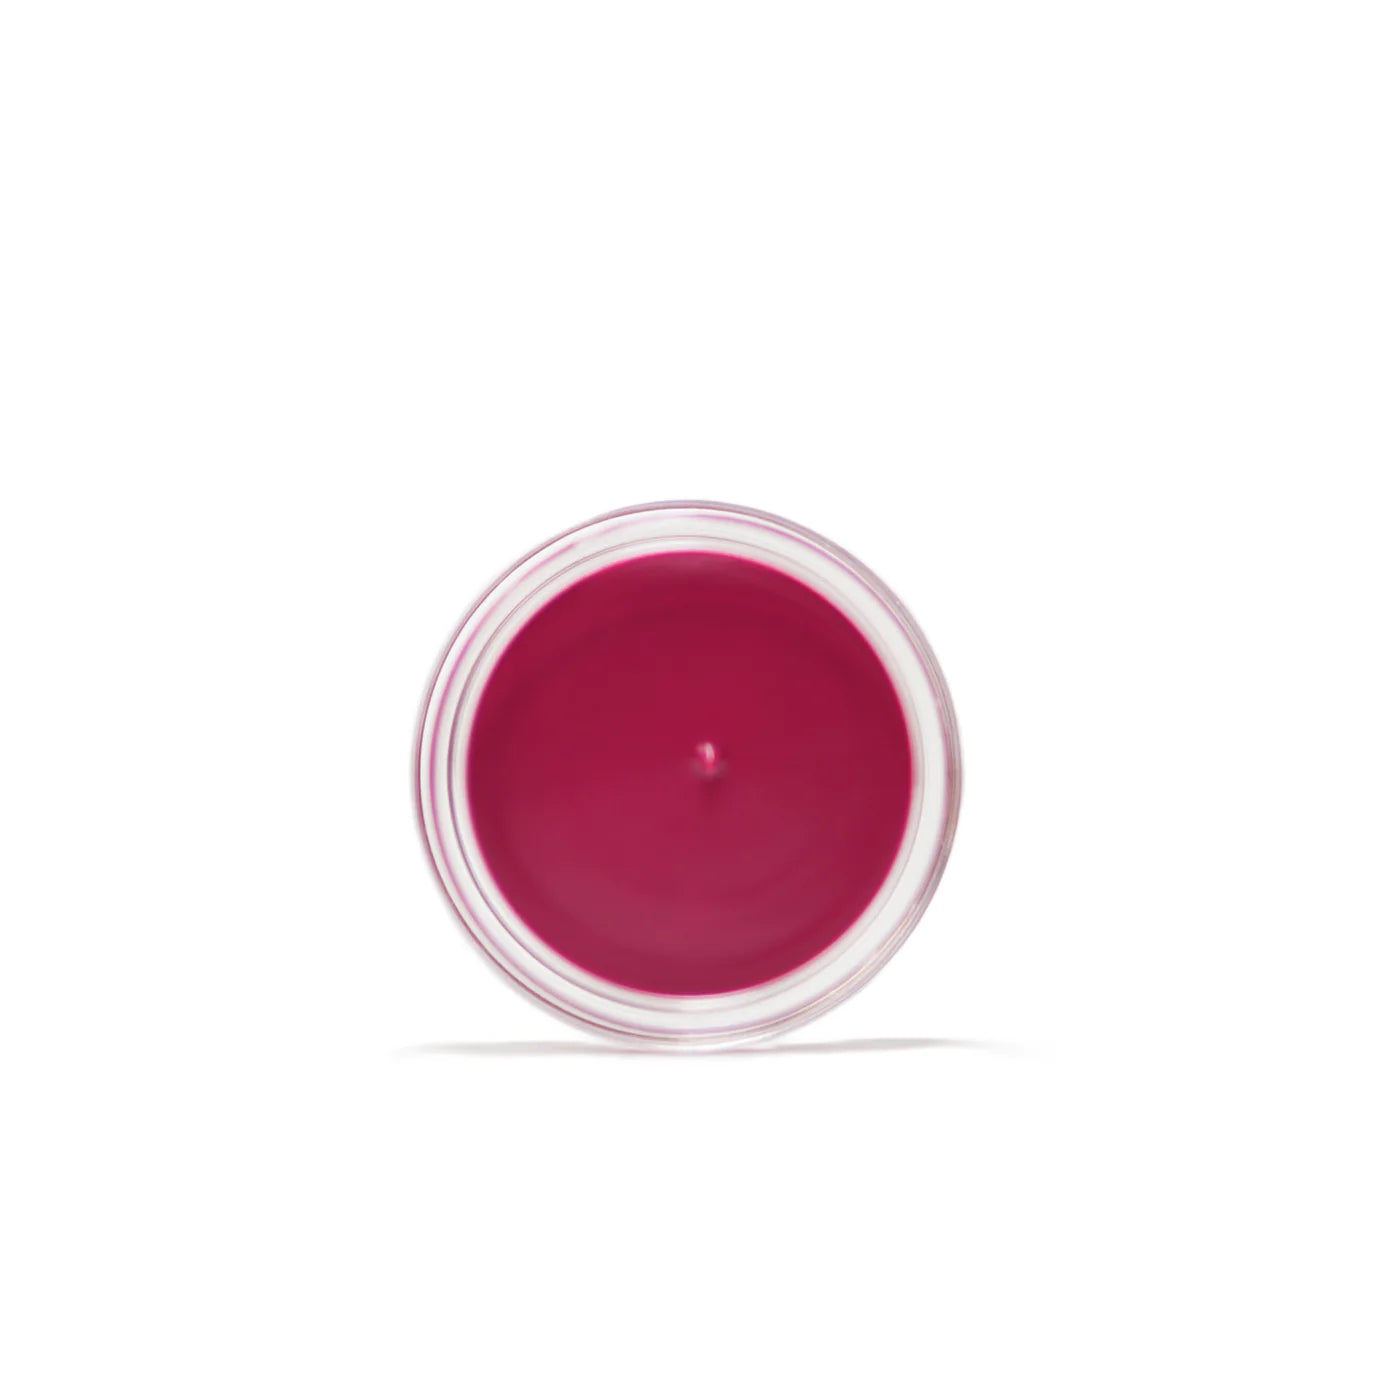 Kara Beauty - Soft Serve Lip & Cheek Whip Berry Souffle